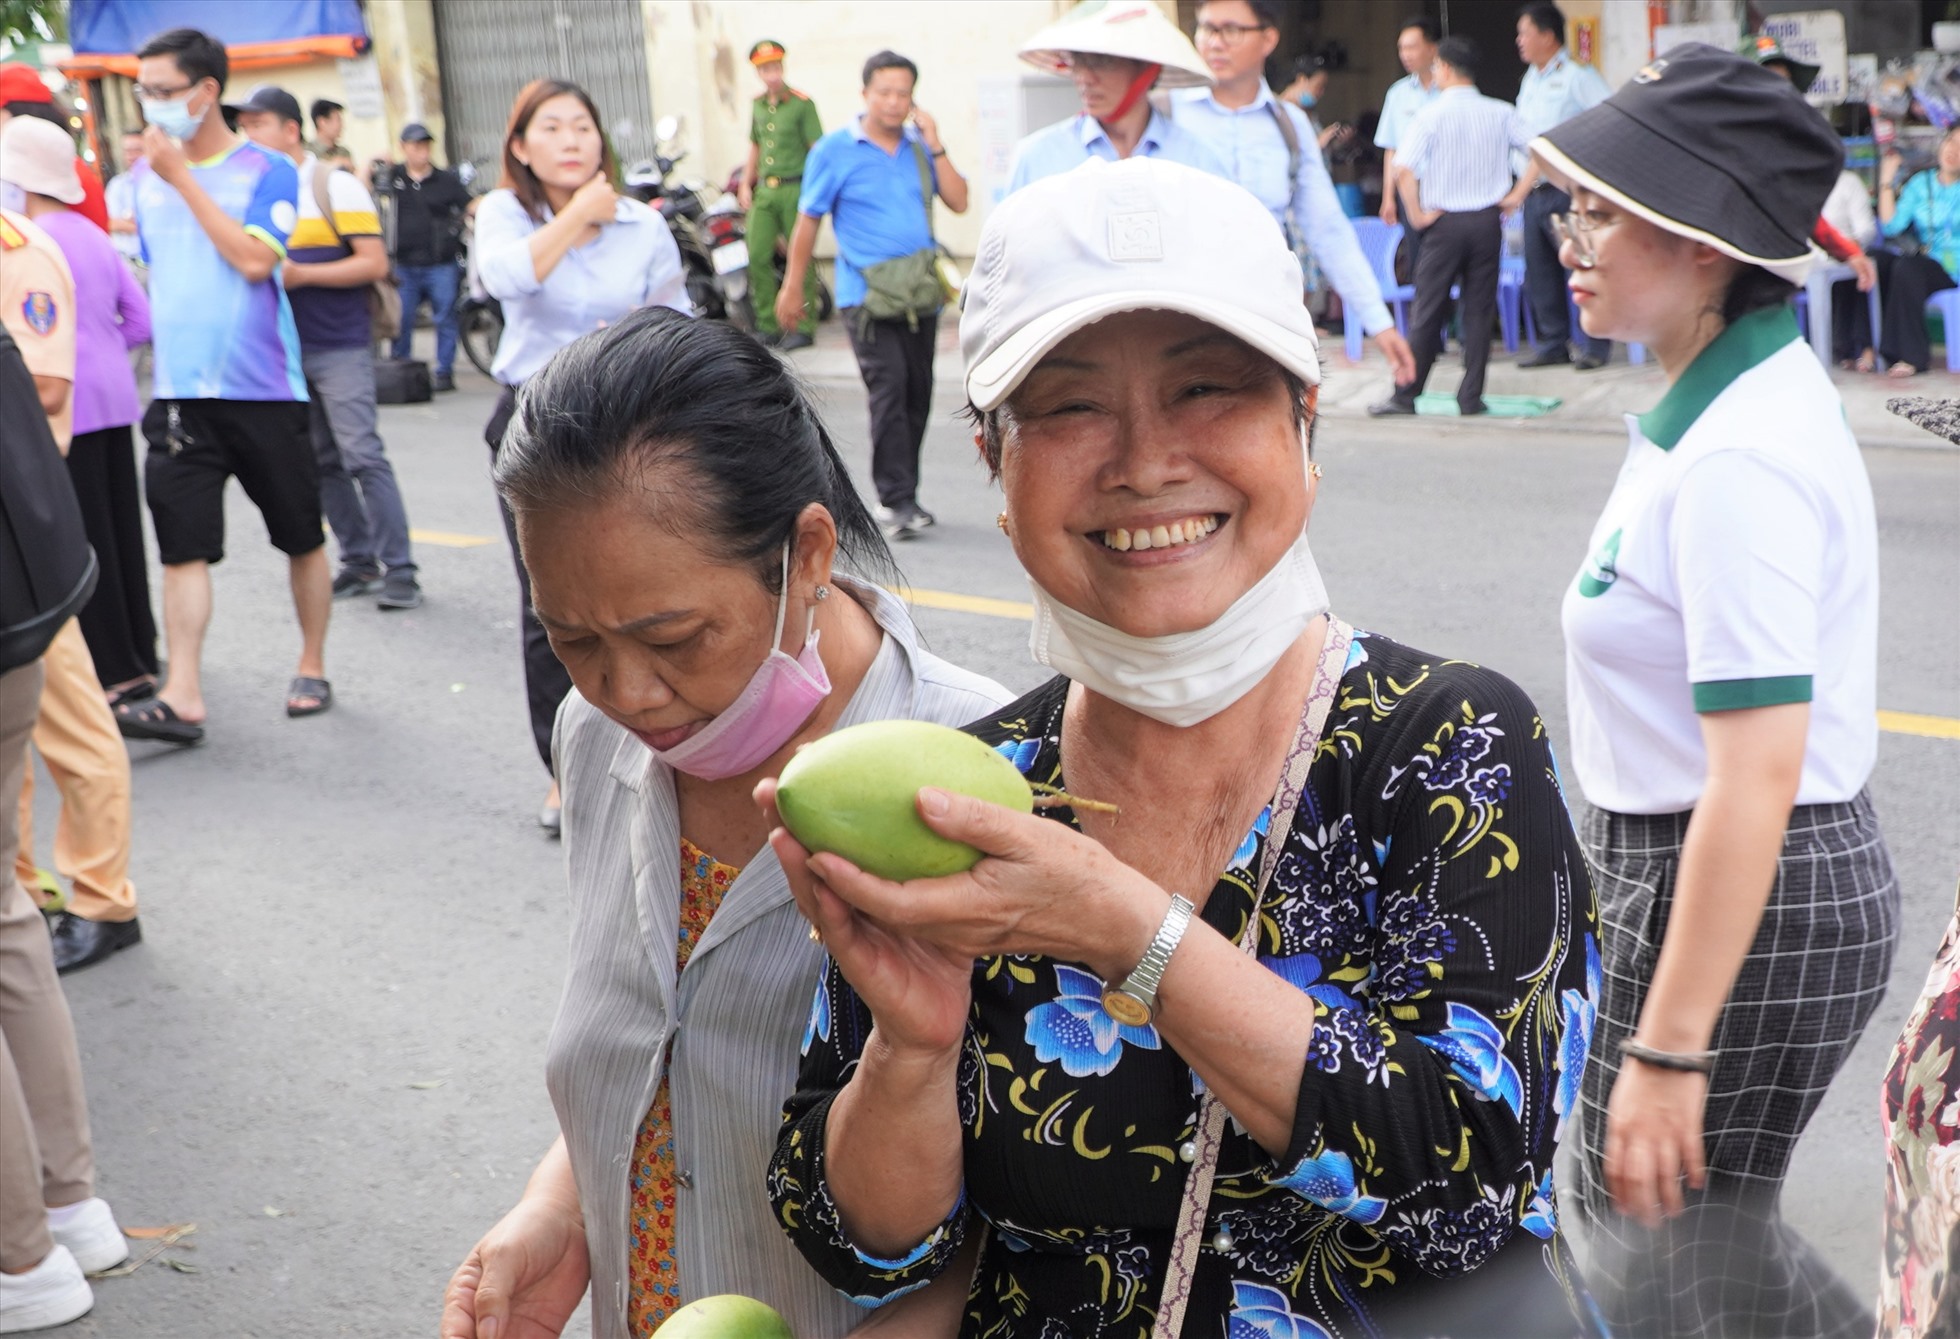 Bà Nguyễn Thị Chín (70 tuổi, Quận 8) cho biết, trái cây ở đây rất ngon và rẻ. “Tôi biết được thông tin hôm nay có sự kiện này nên sáng dậy ăn uống xong là tới đây liền, mình đi sớm vừa lựa được trái cây ngon lại chưa quá đông đúc“, bà Chín nói